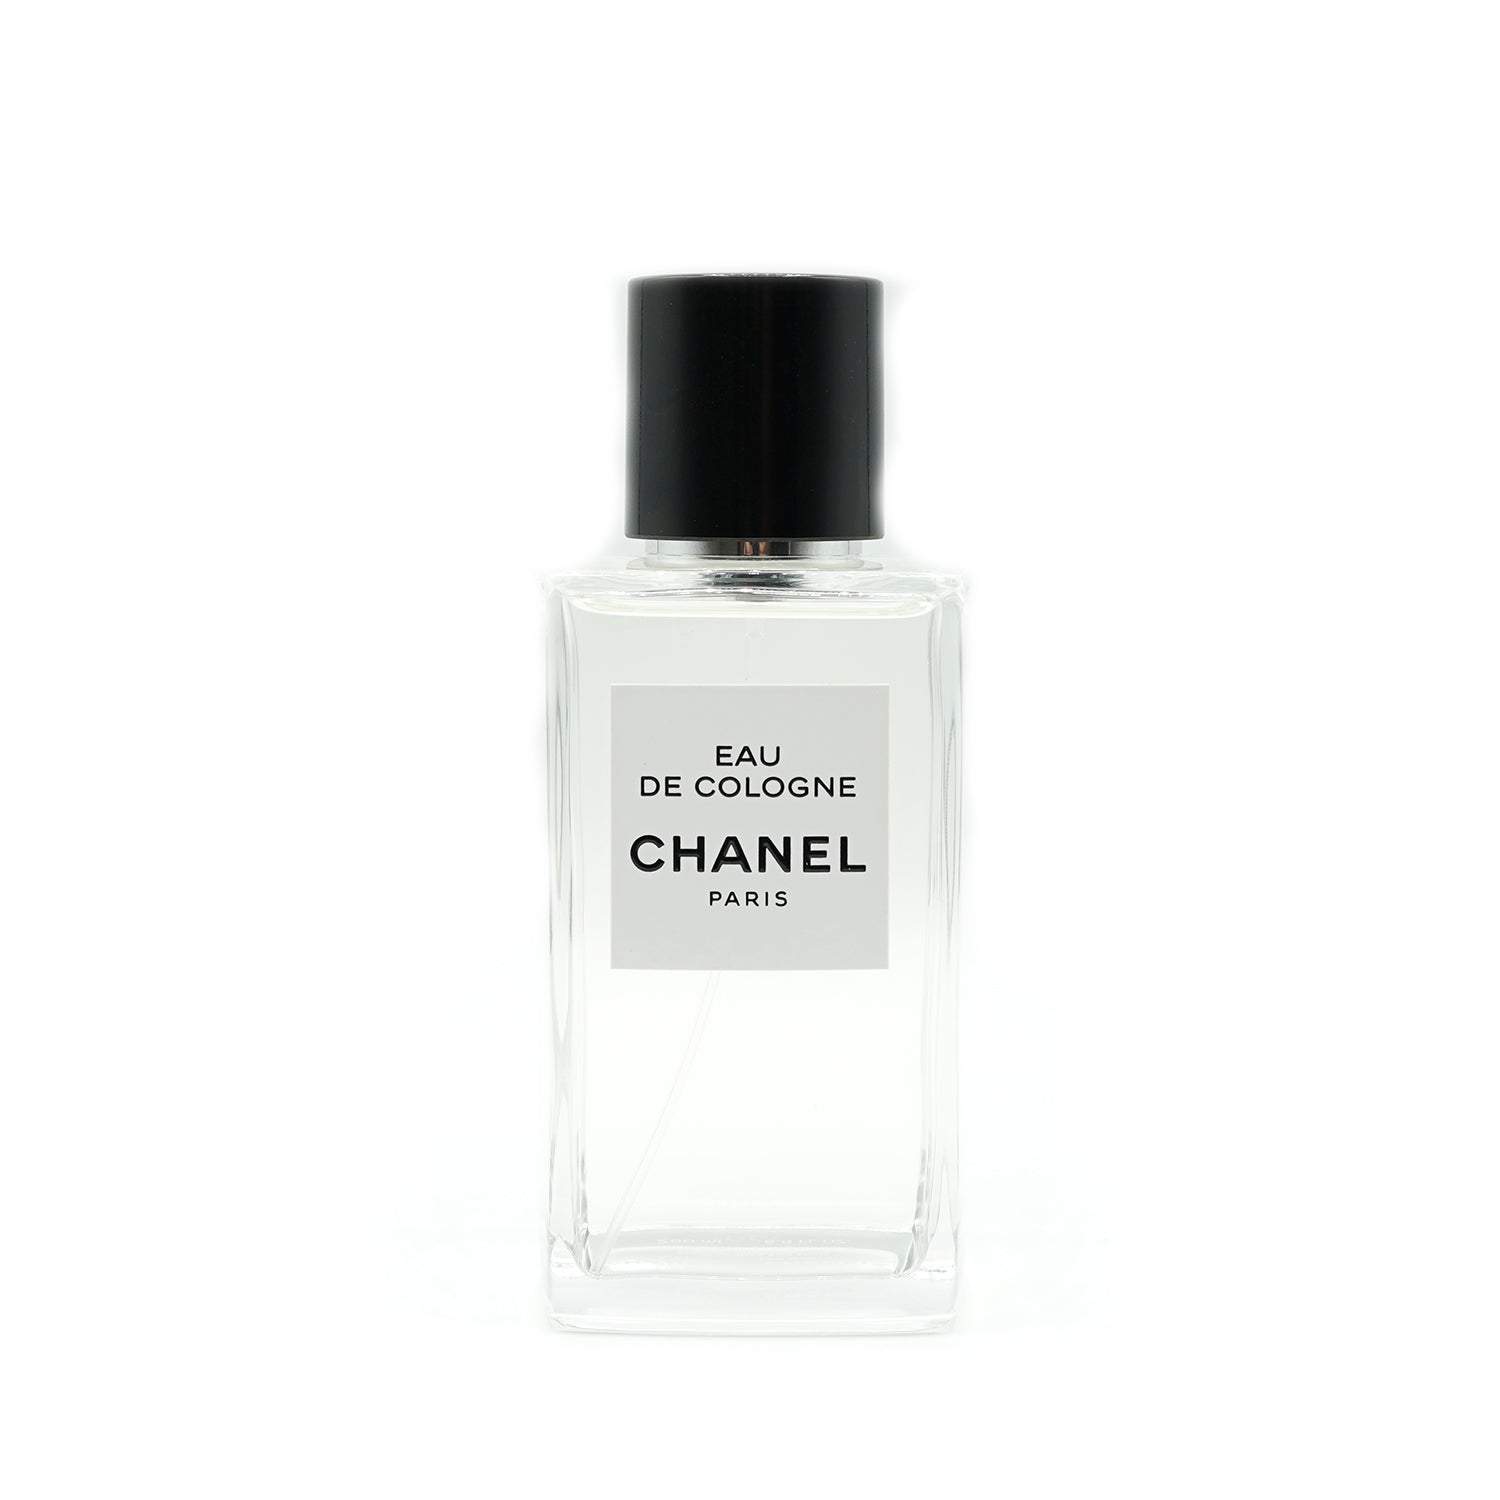 Les Exclusifs de Chanel | Eau de Cologne Abfüllung